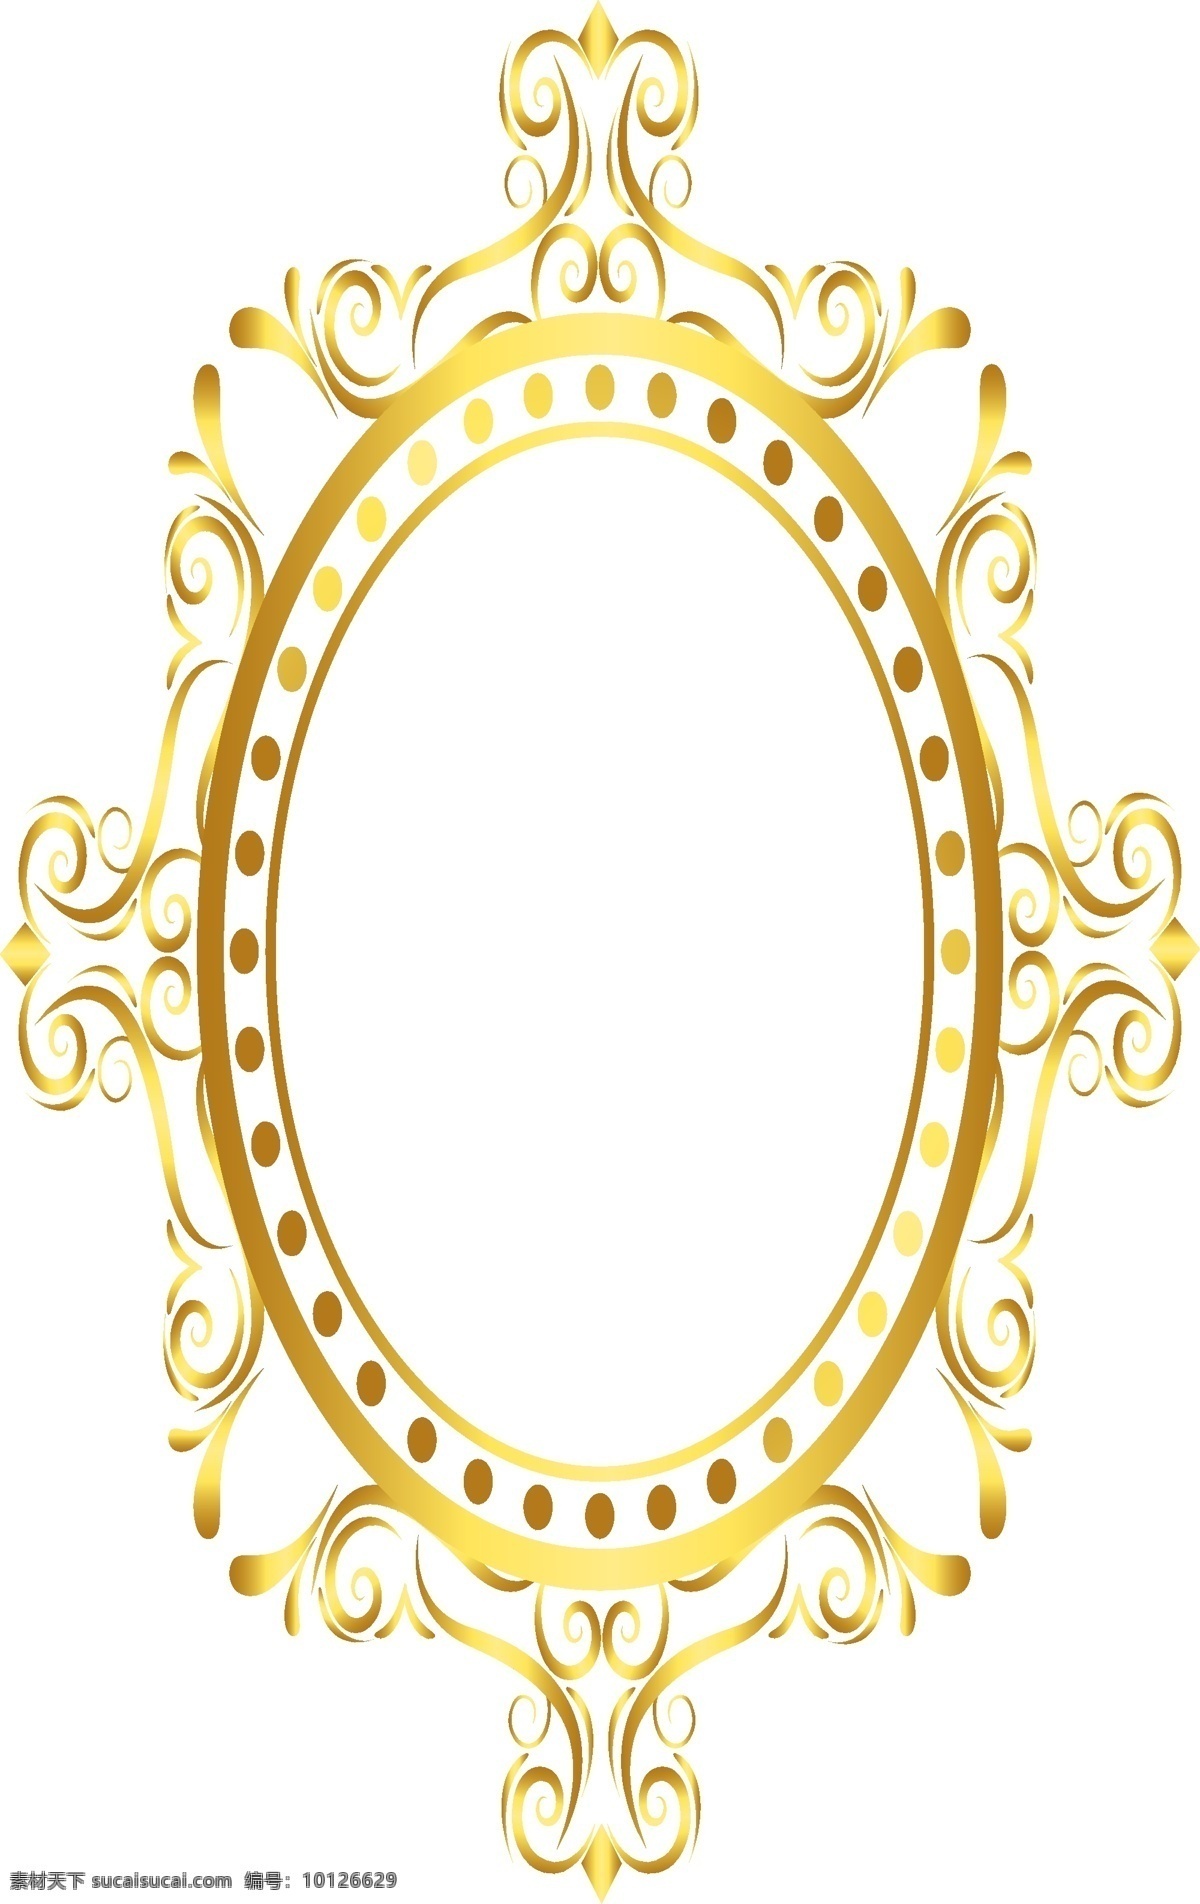 椭圆形 矢量 卡通 风格 镜框 卡通风格镜框 镜子框架 矢量镜框 金色镜框 烫金风格镜框